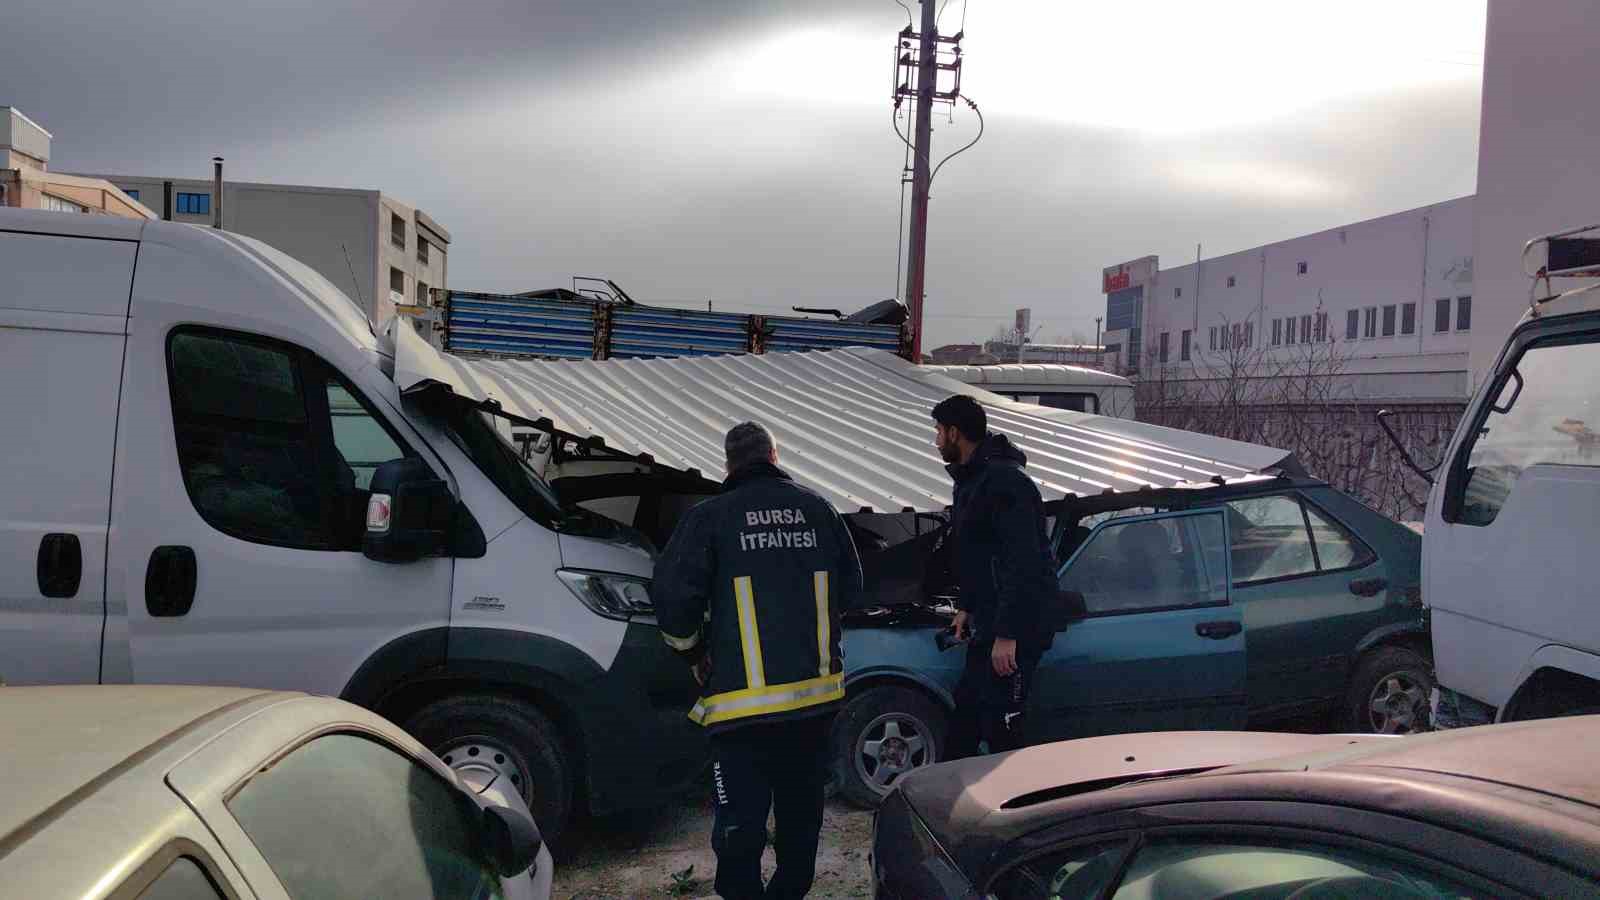 Lodosta uçan fabrika çatısı yediemin otoparkındaki araçlara zarar verdi